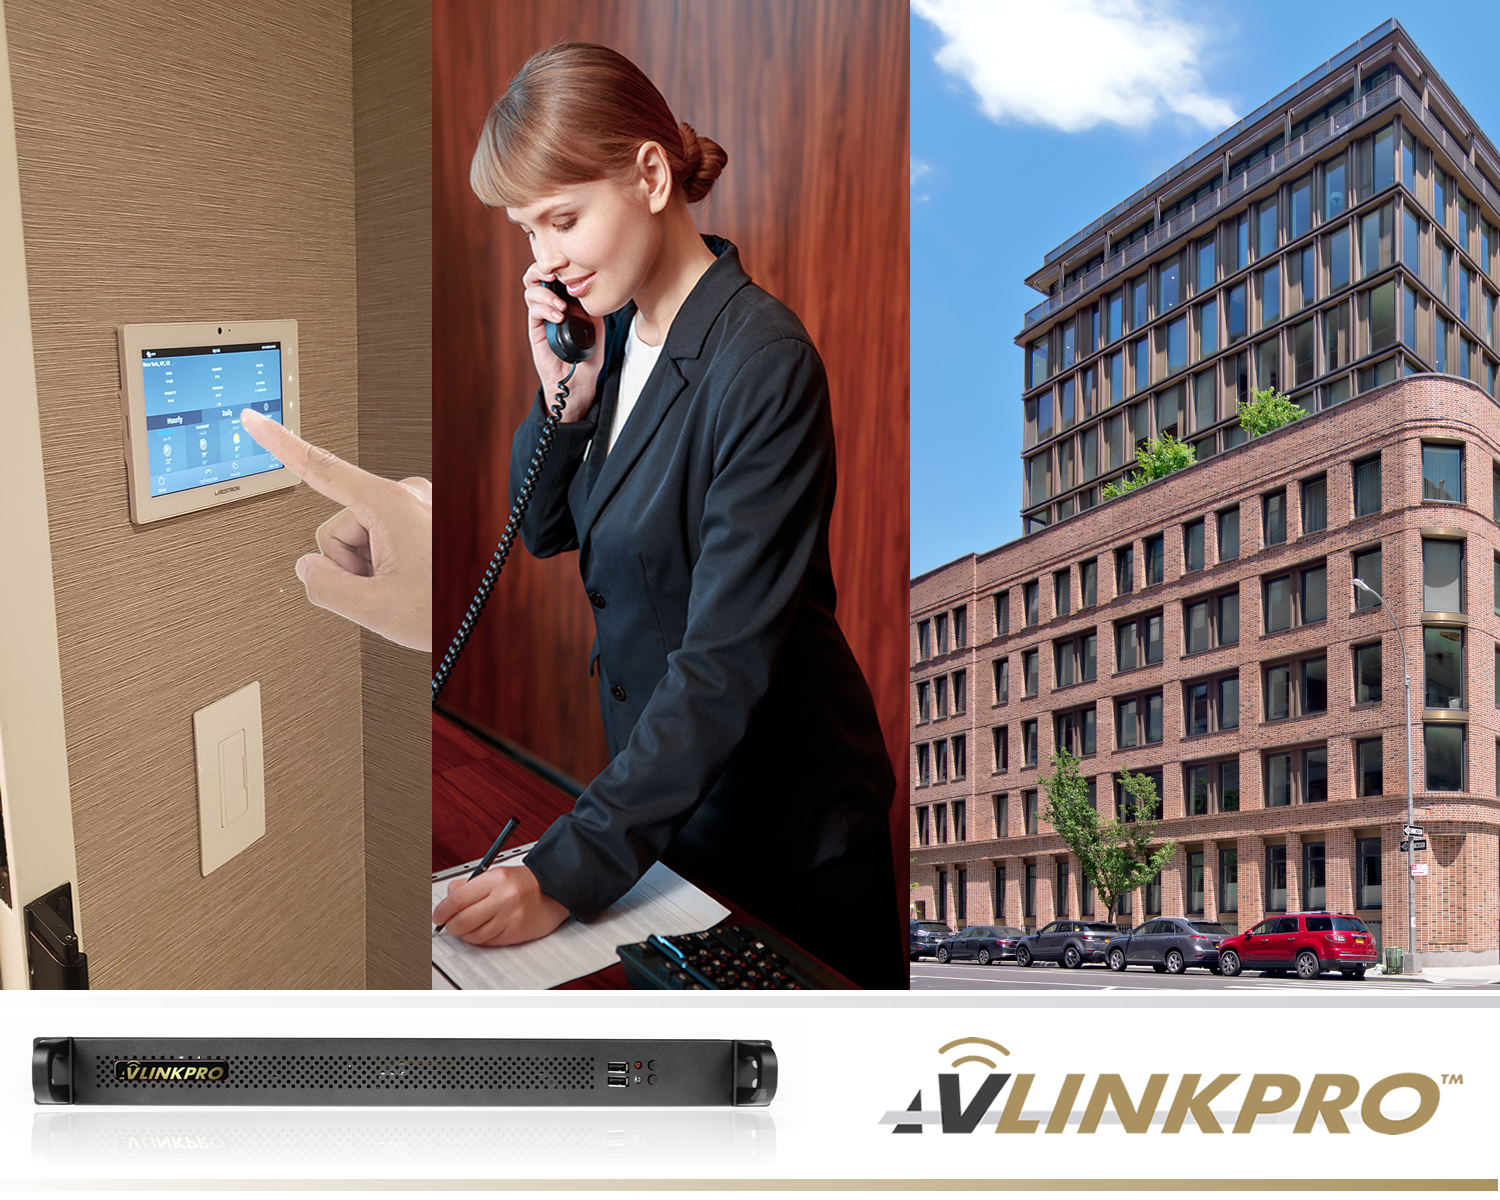 AV LinkPro™ is the go to solution for the multi-tenant residential intercom world.